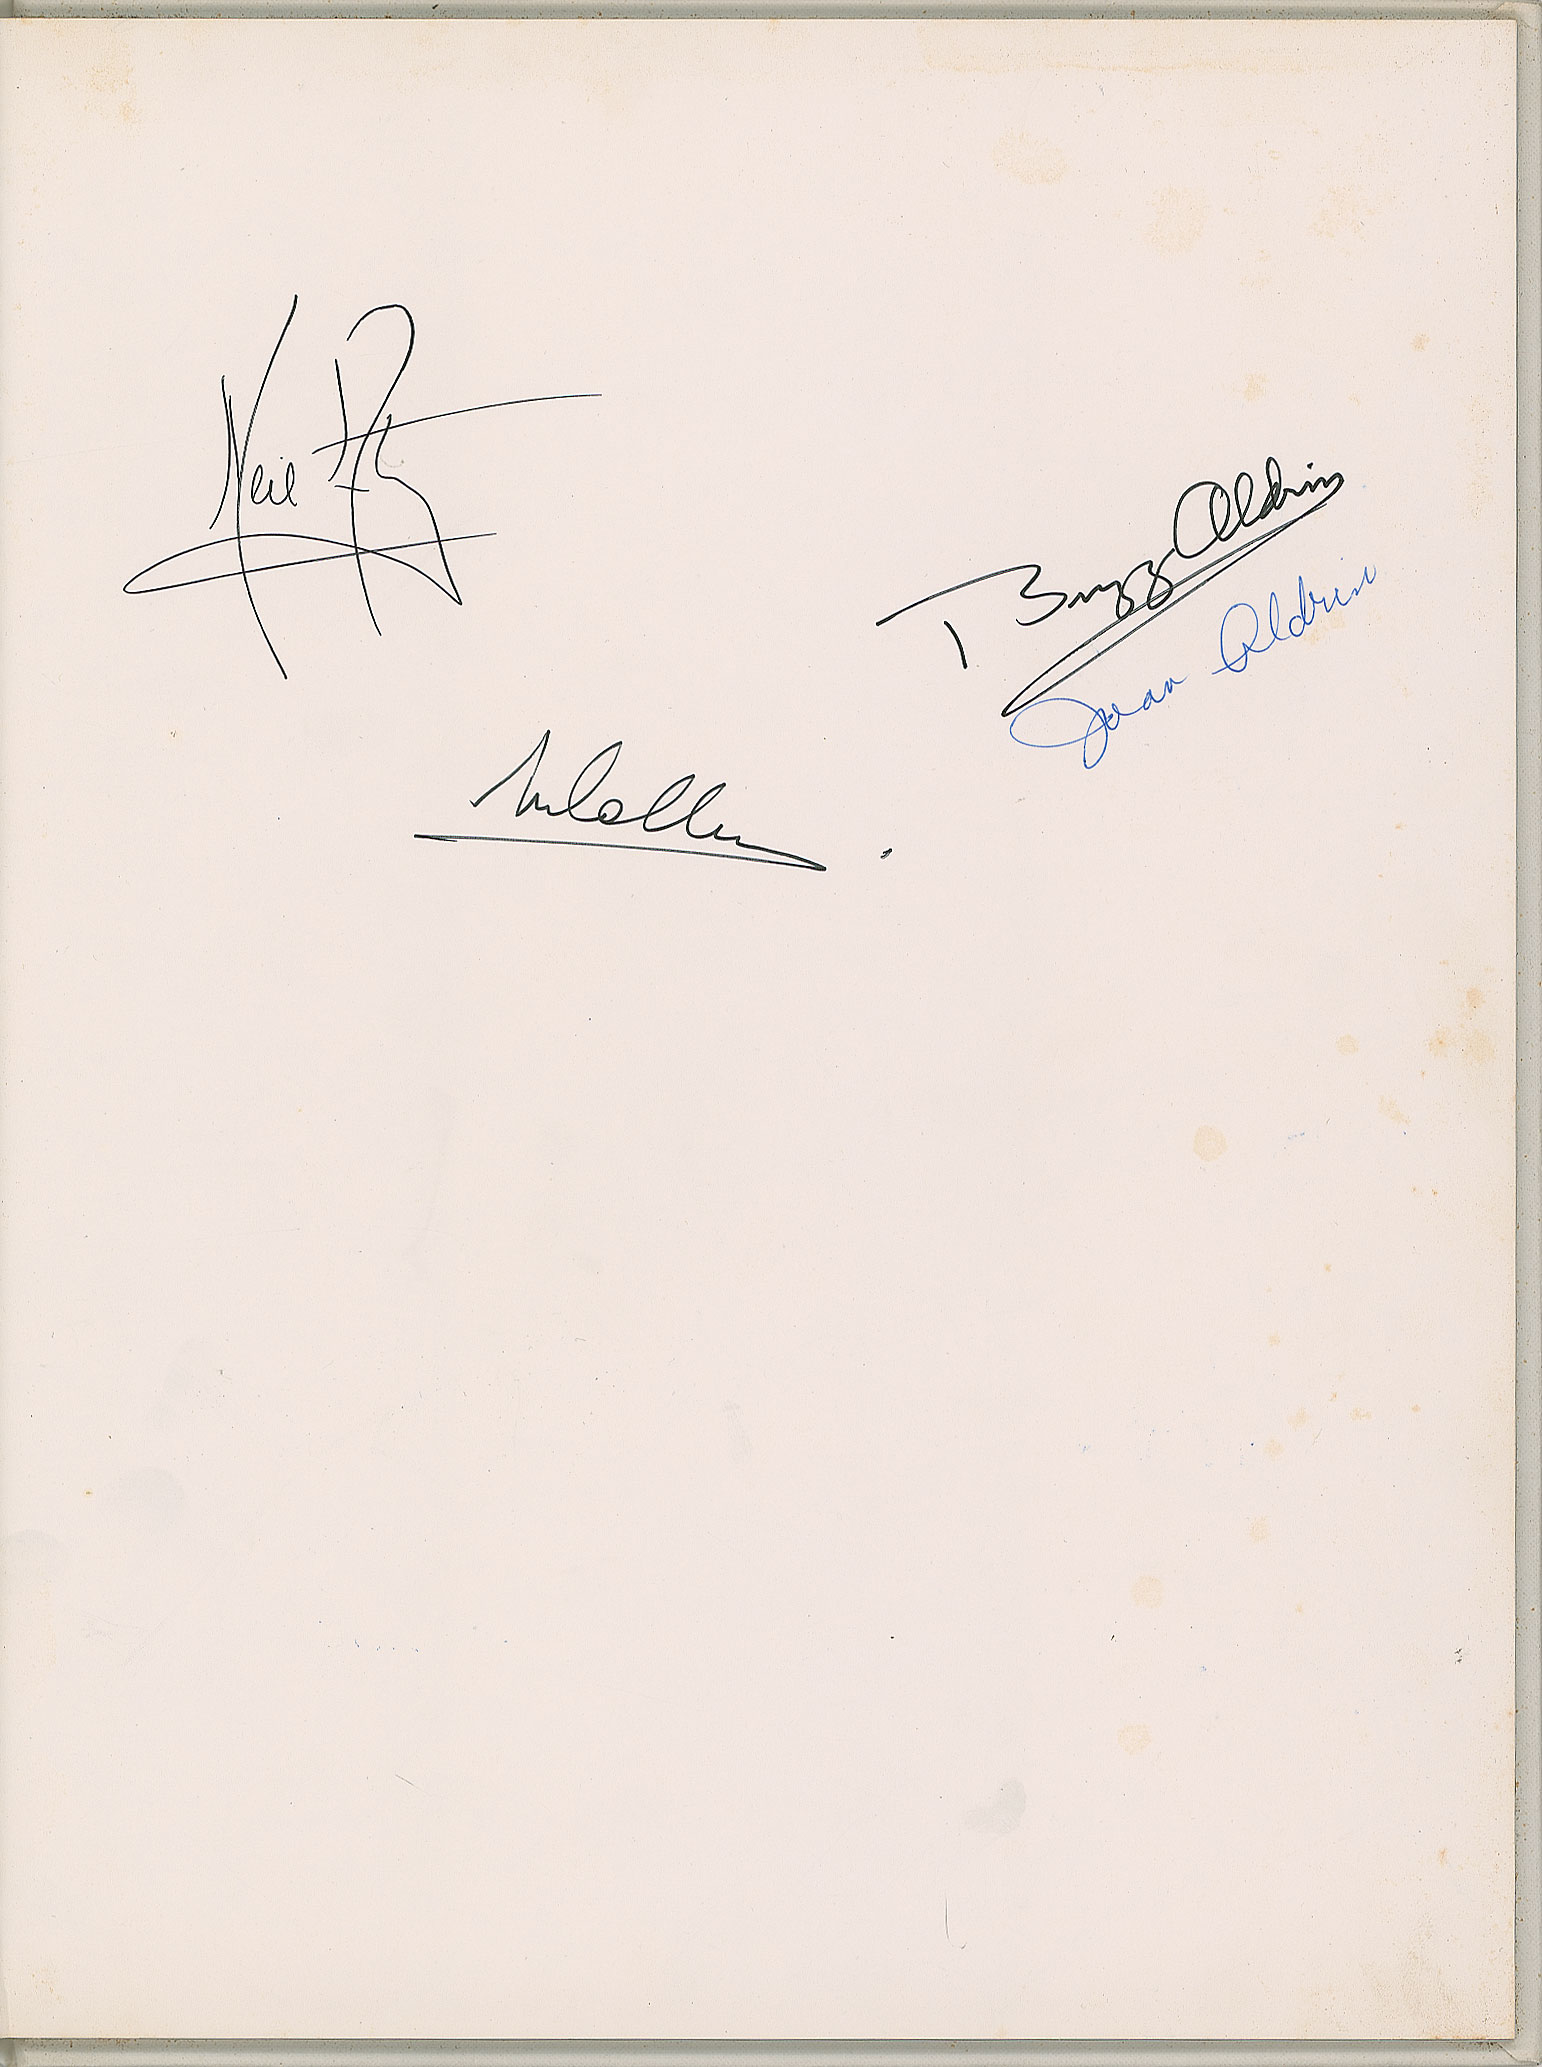 Lot #8127  Apollo Astronauts Signed Book